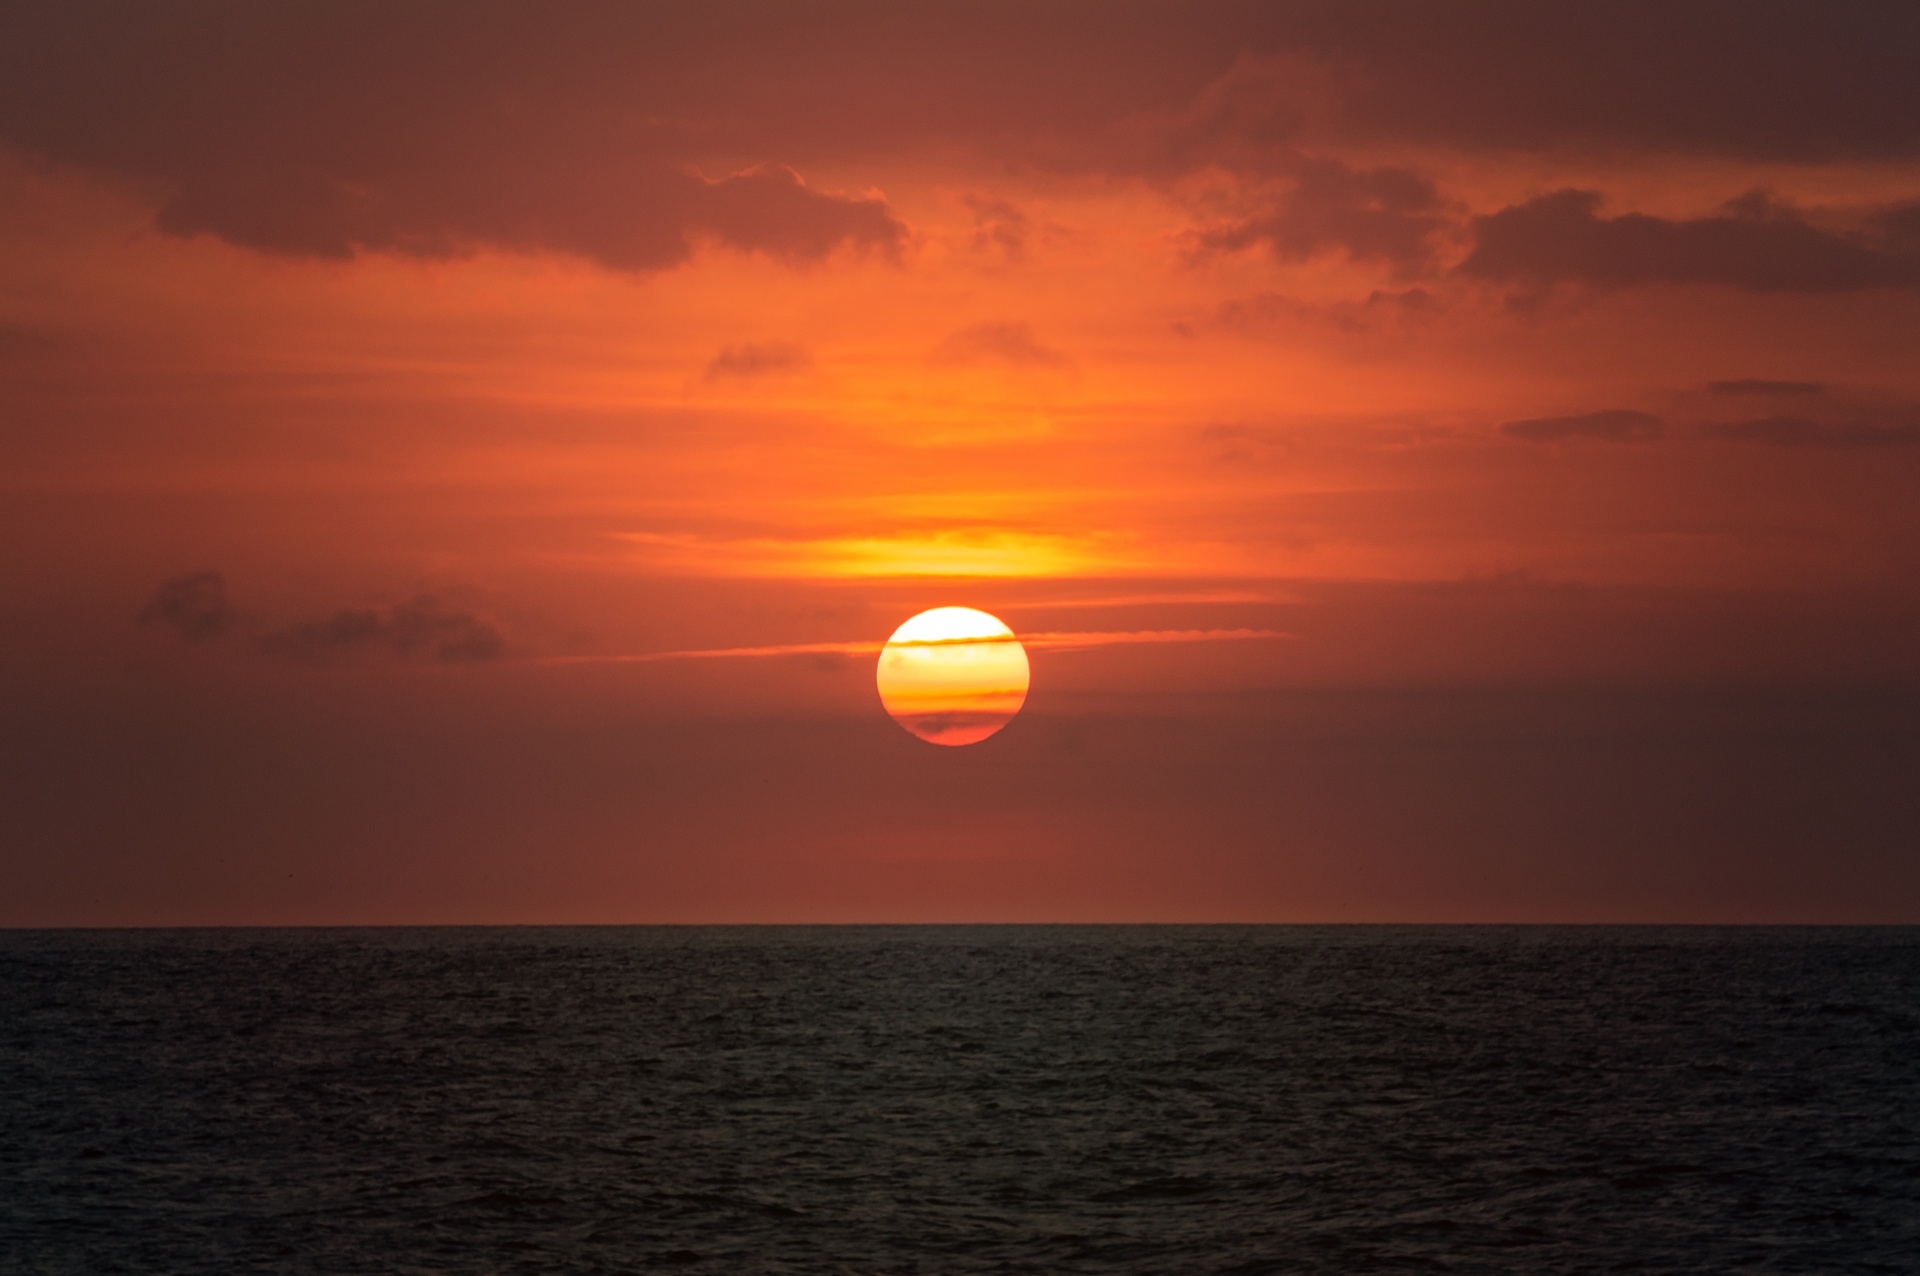 Mời bạn đến xem ảnh bìa hoàng hôn đầy màu sắc và đẹp mắt. Cảm nhận một khoảnh khắc thanh tịnh của thiên nhiên, khi ánh nắng chuyển dần sang màu cam và tím khiến cho cả bầu trời và đại dương trở thành một tác phẩm nghệ thuật.